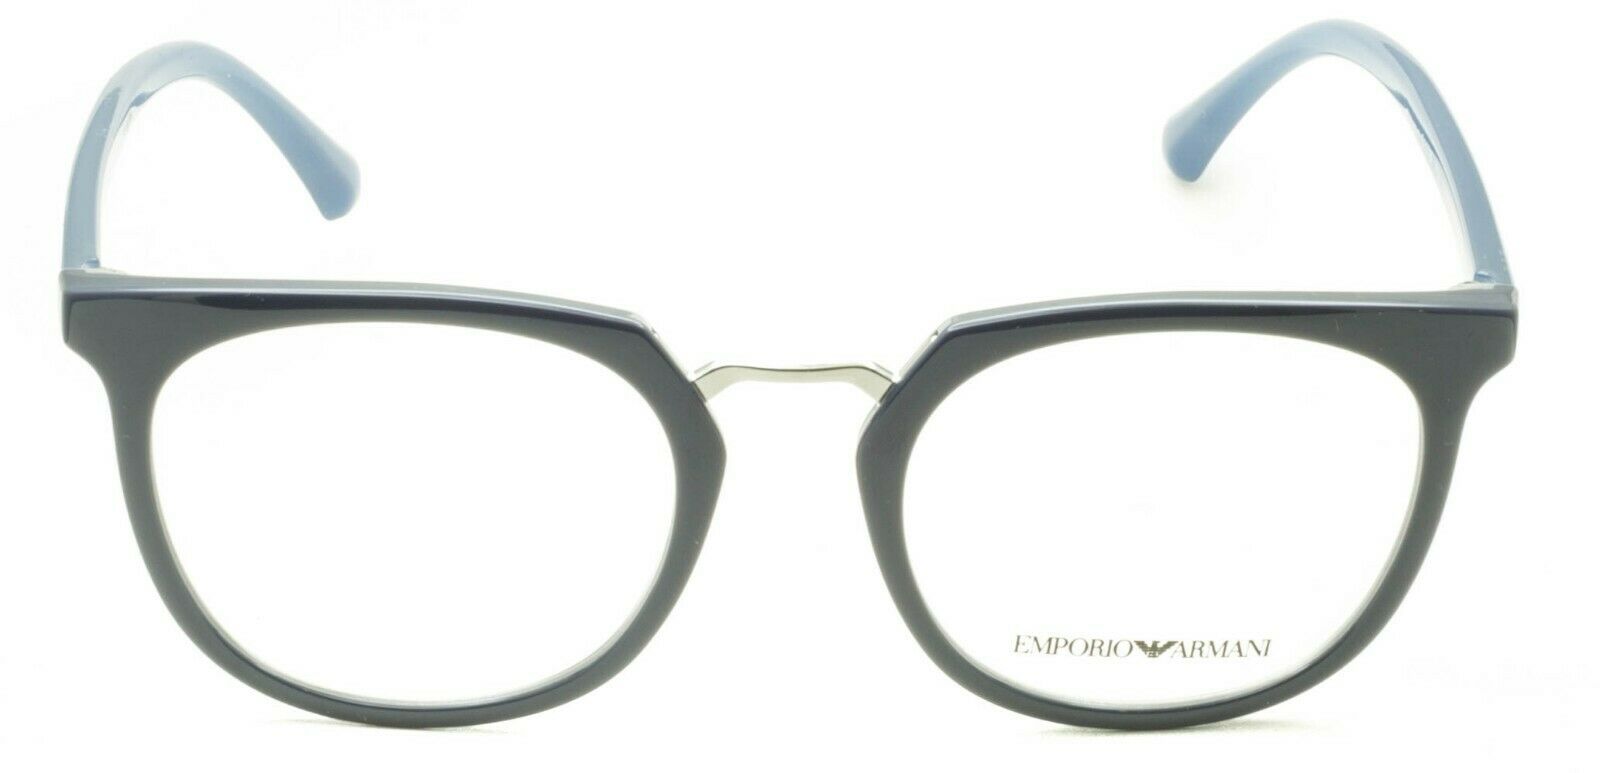 EMPORIO ARMANI EA 3139 5722 51mm Eyewear FRAMES RX Optical Glasses EyeglassesNew